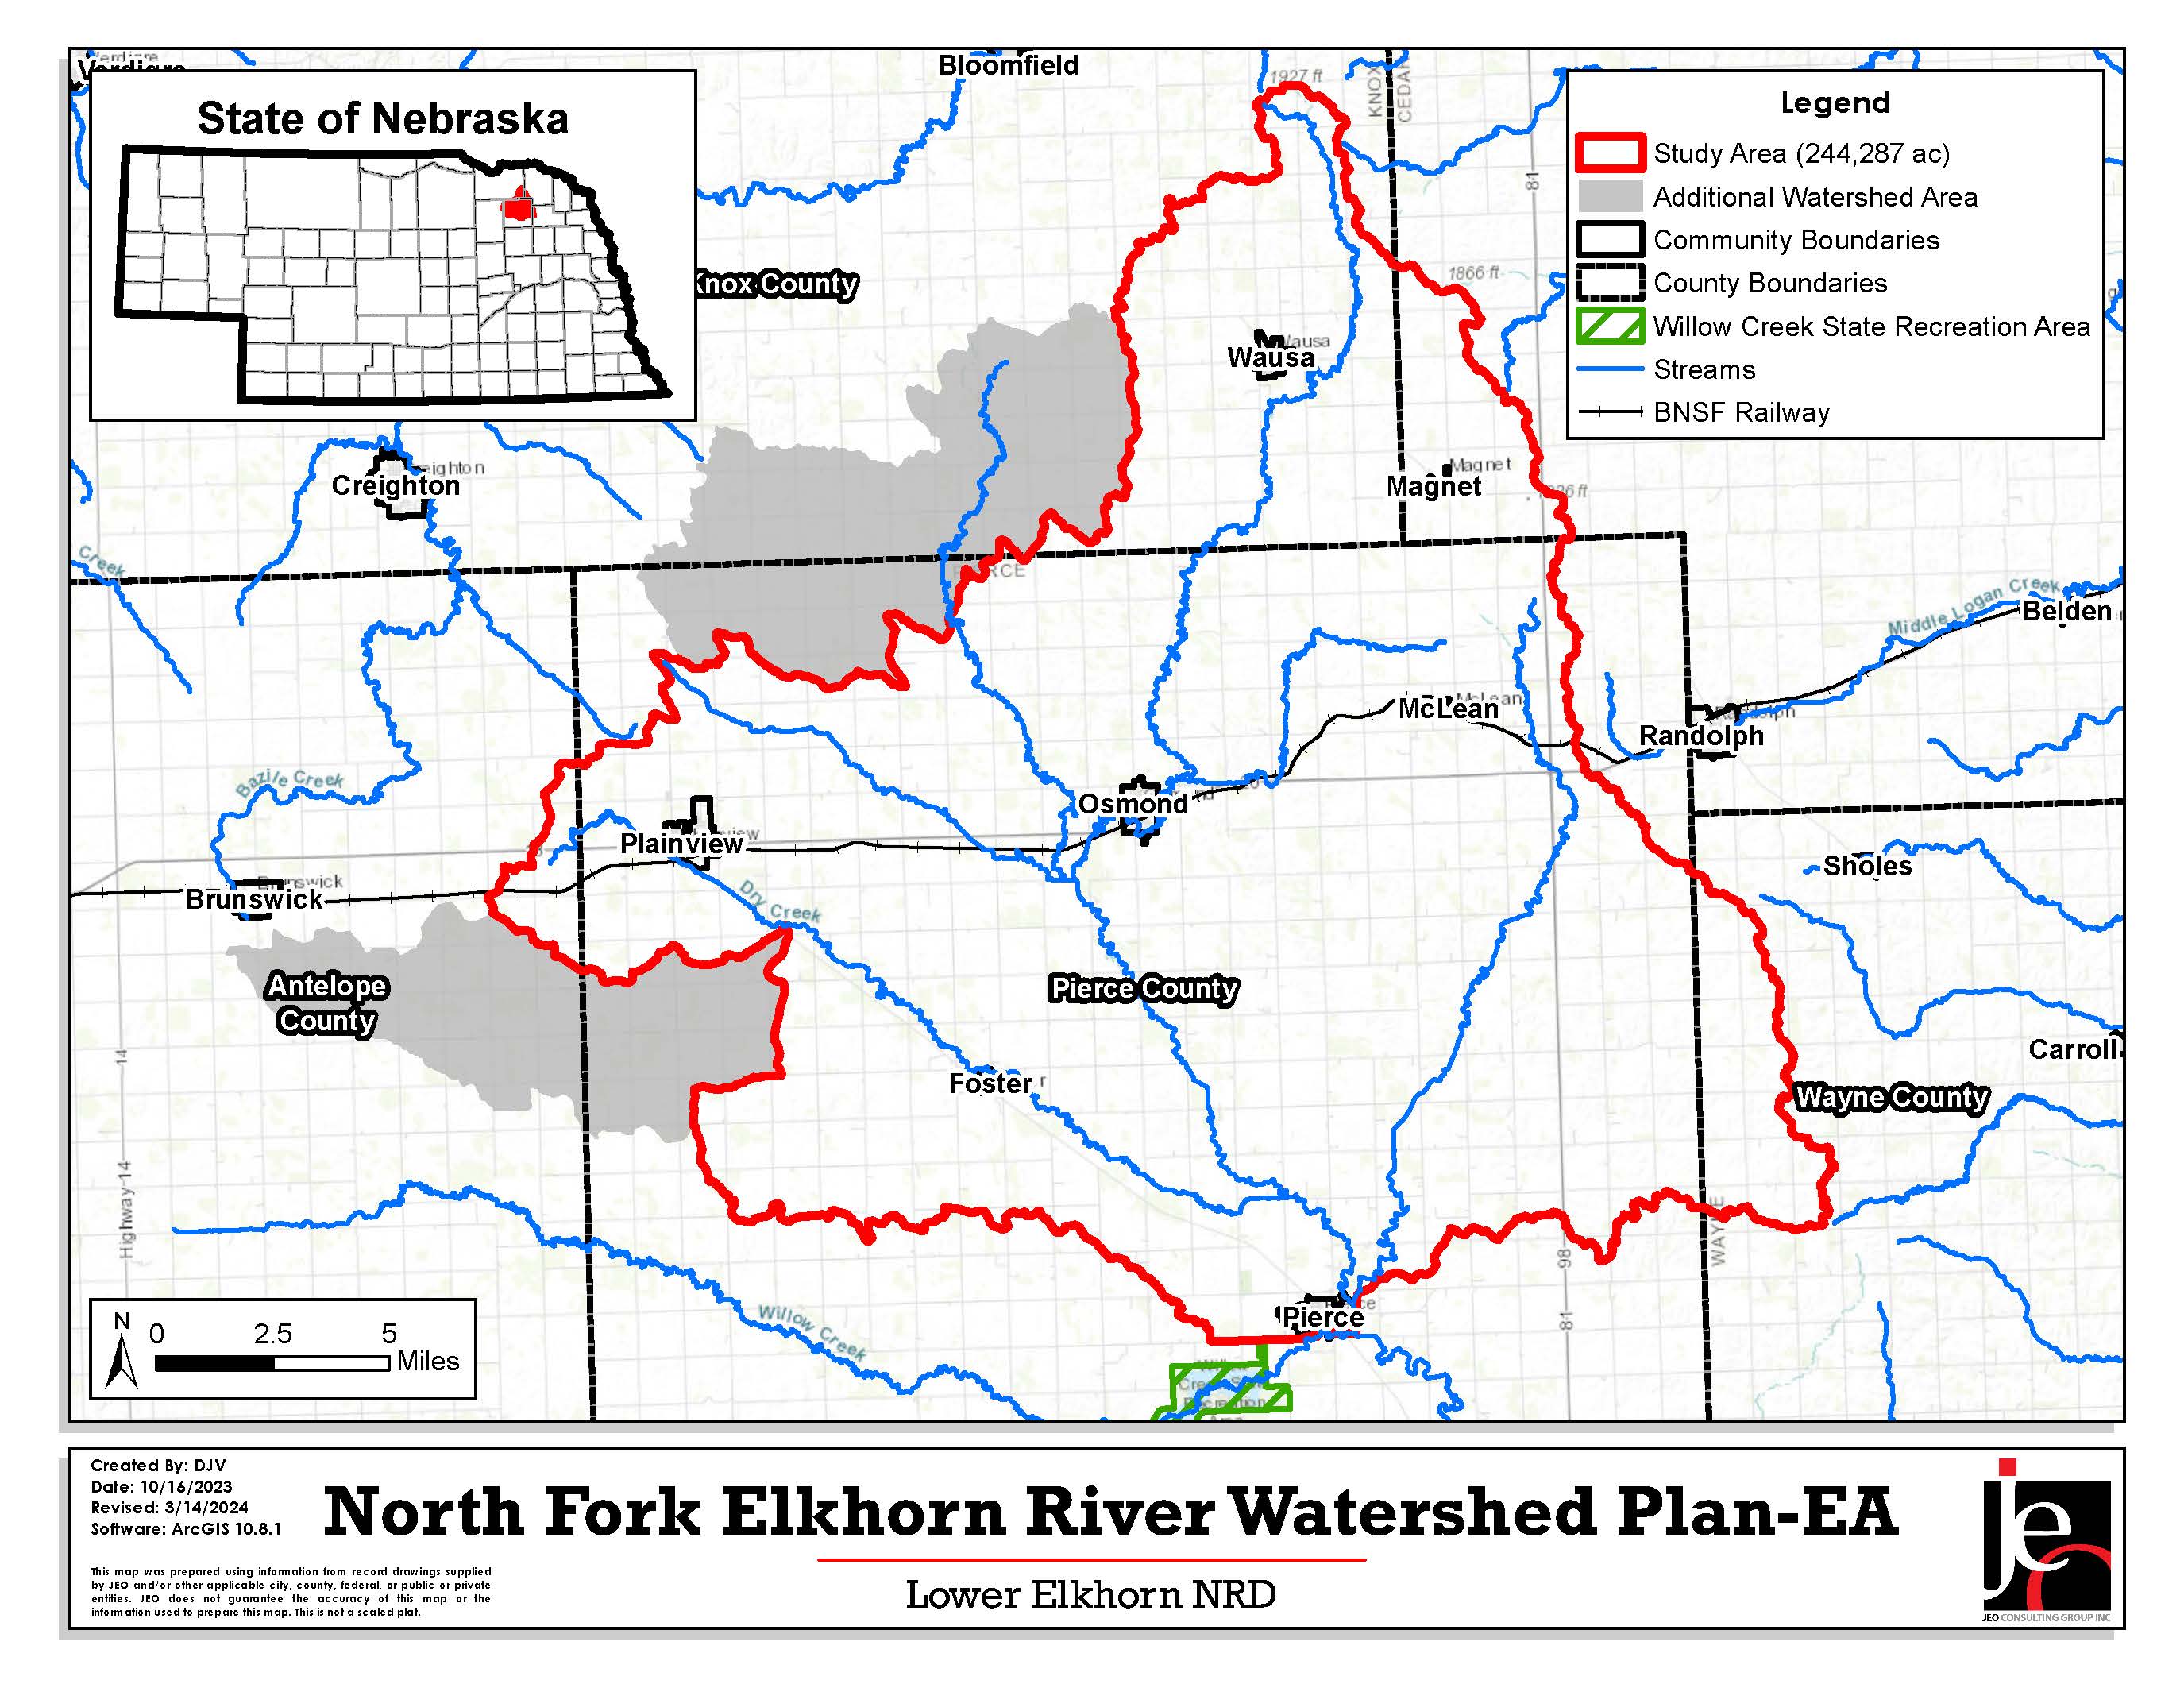 North Fork Elkhorn River Watershed Plan-EA